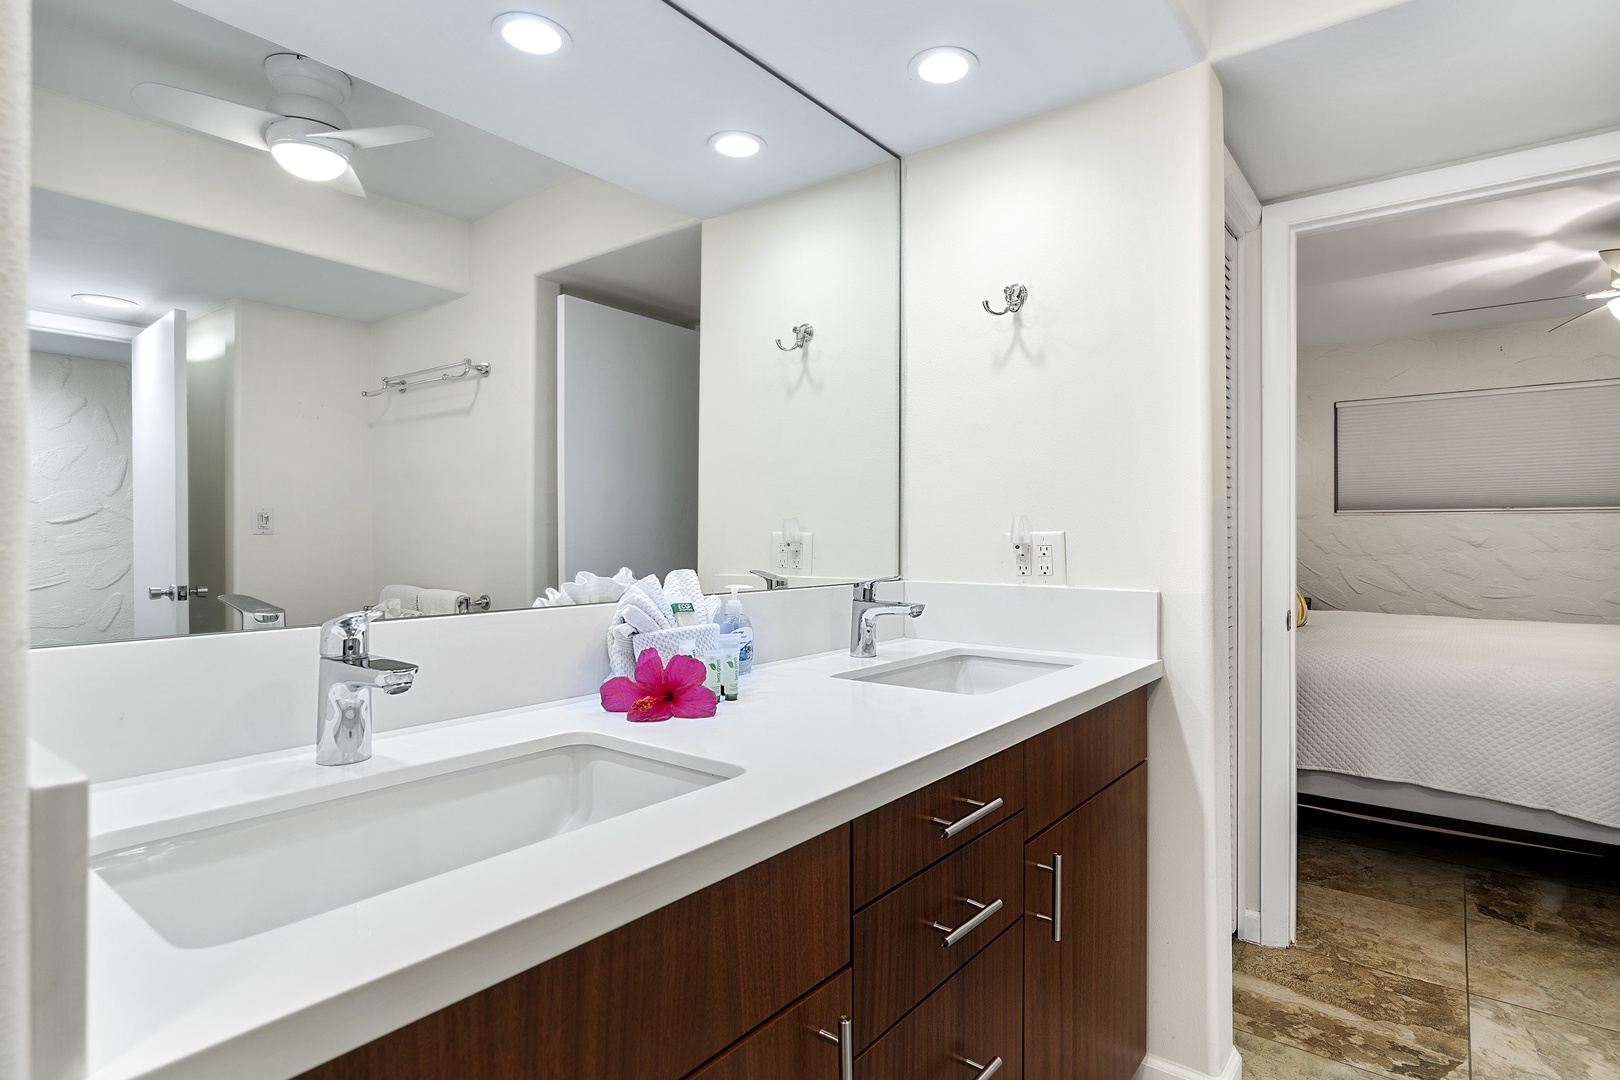 Kailua Kona Vacation Rentals, Casa De Emdeko 104 - Renovated bathroom with dual vanities!